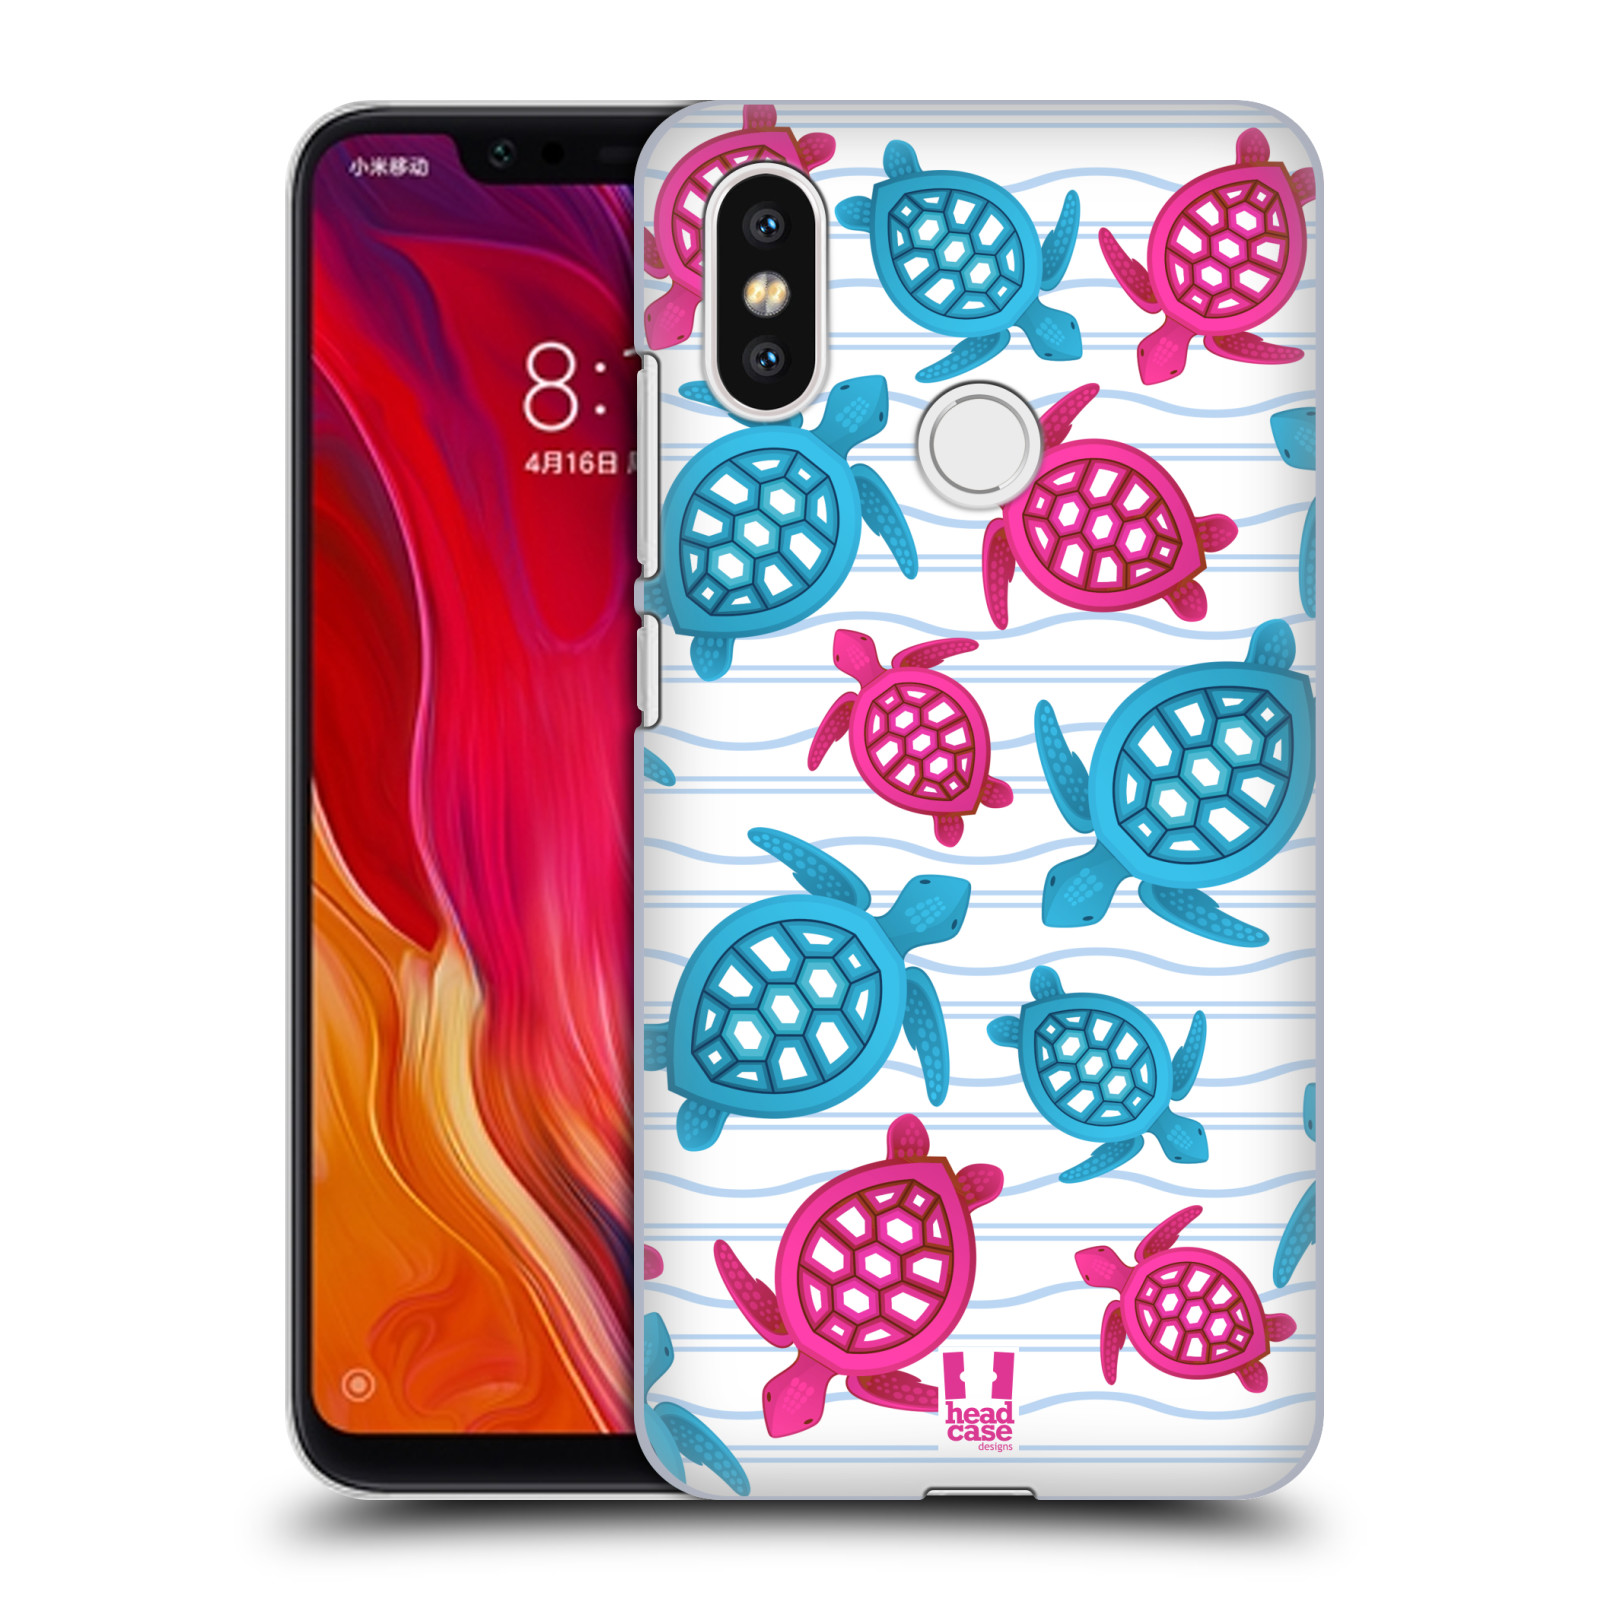 Zadní obal pro mobil Xiaomi Mi 8 - HEAD CASE - kreslený mořský vzor želvičky